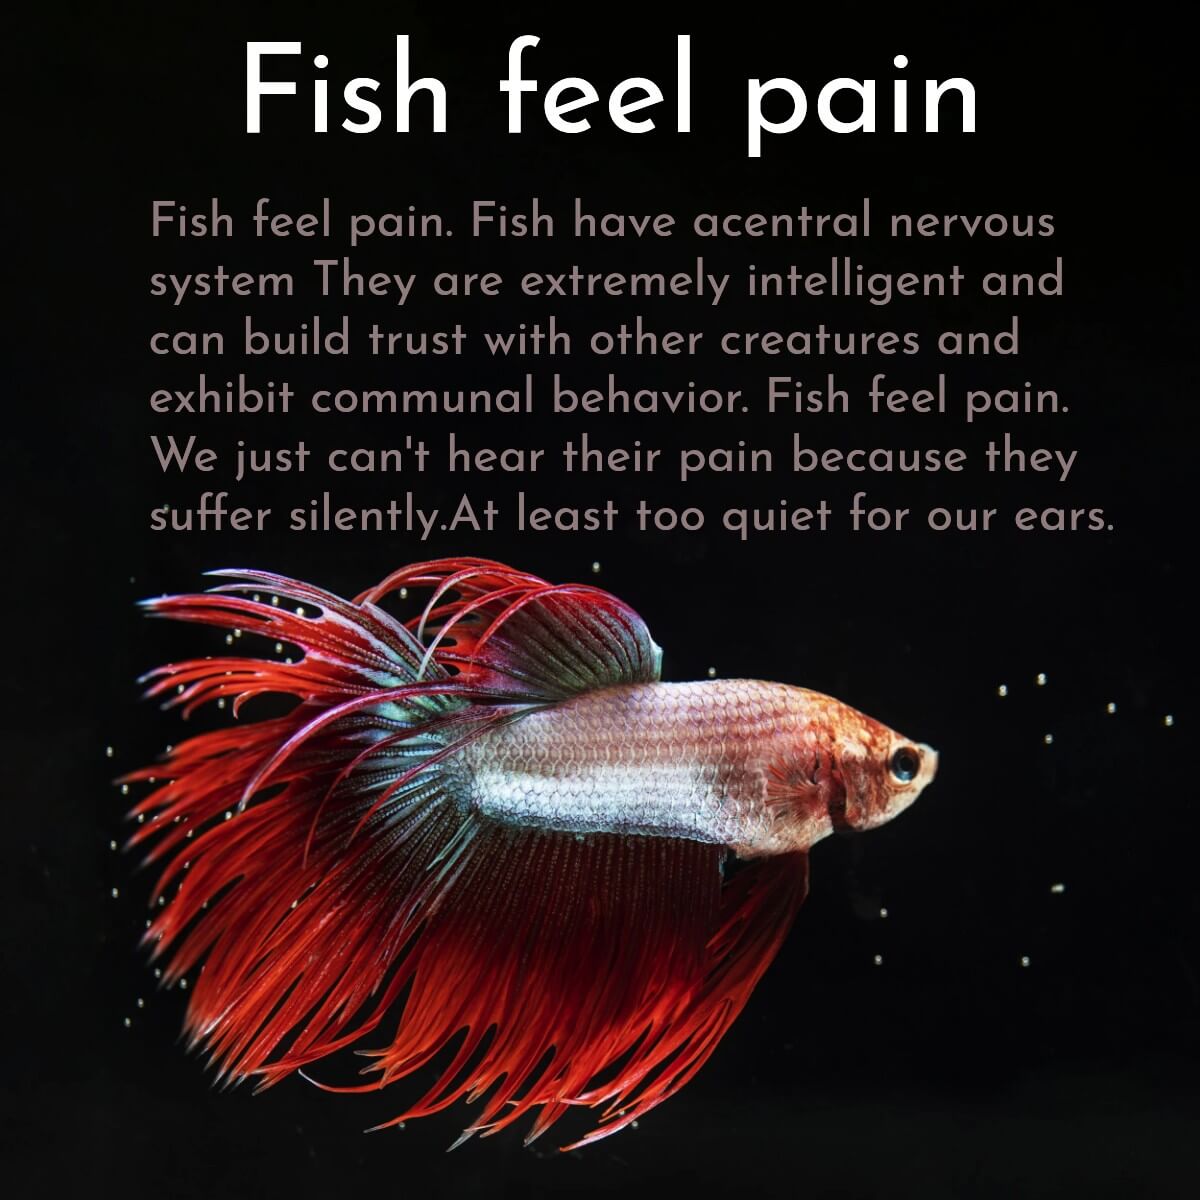 Fish feel pain